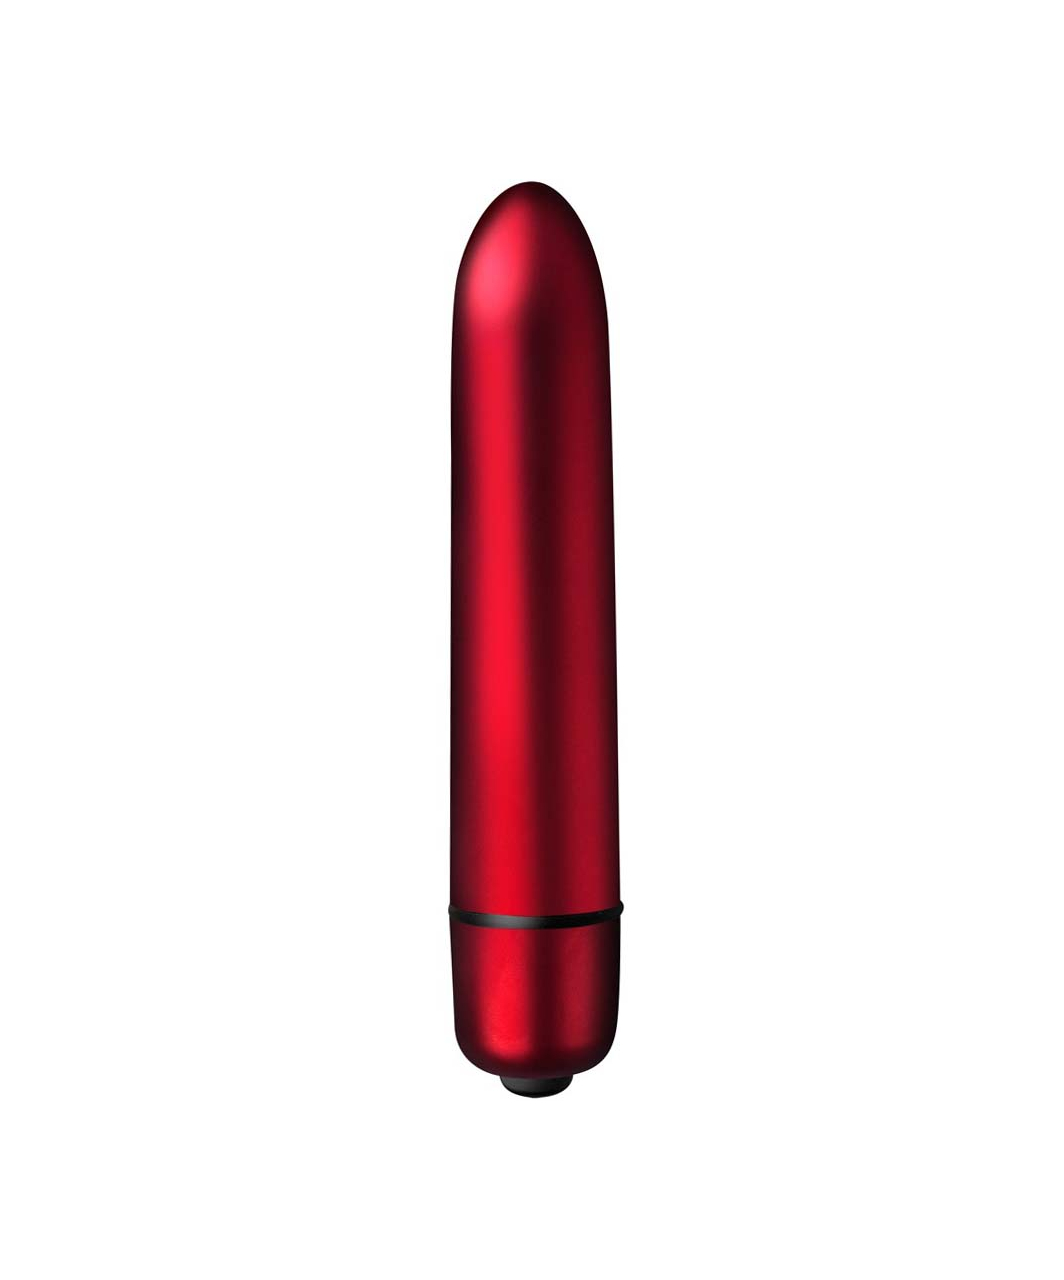 Rocks-Off Scarlet Velvet bullet vibrator